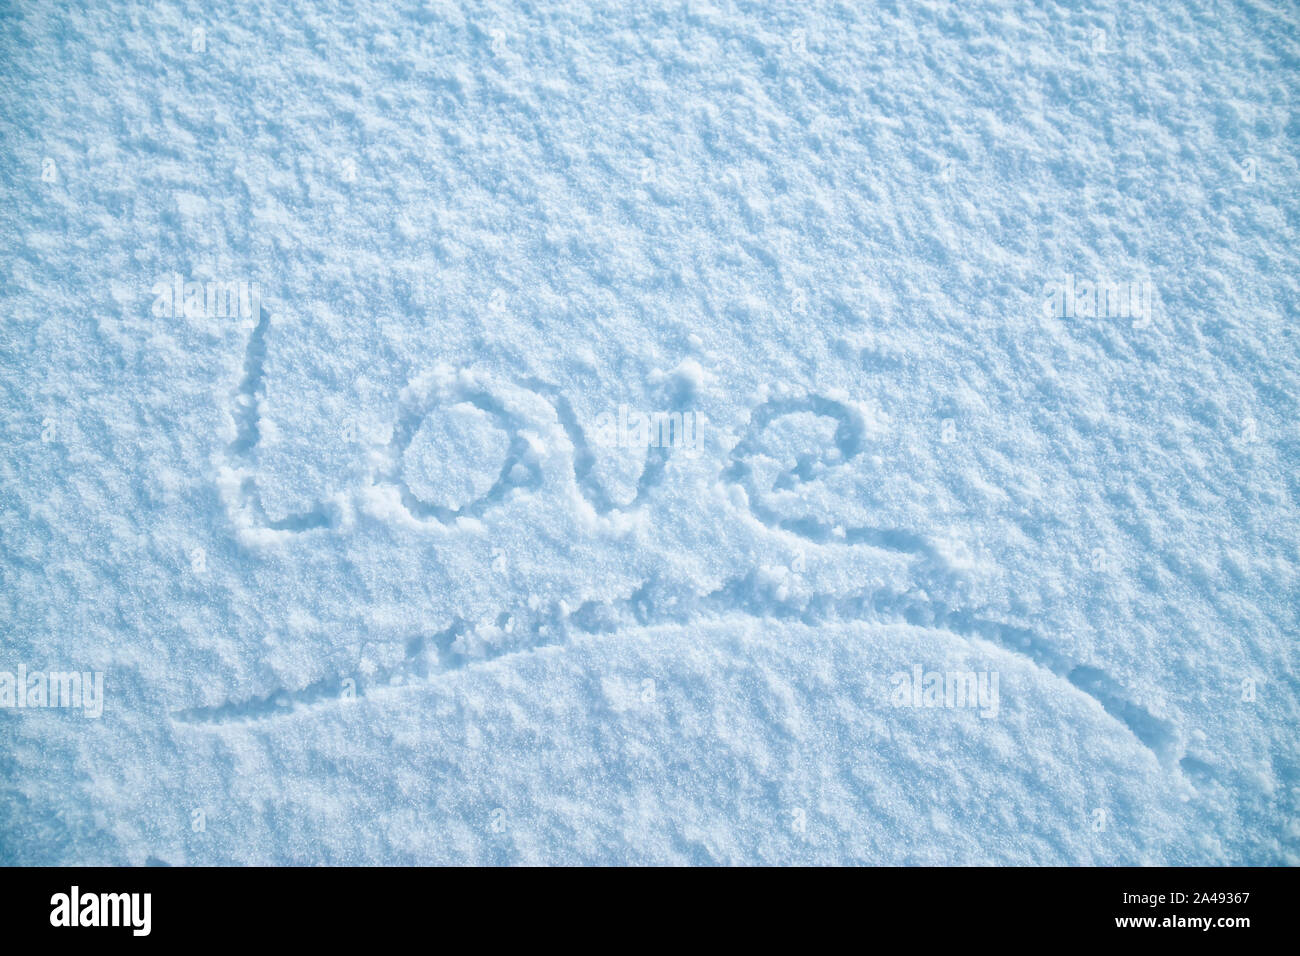 Manoscritte parola sottolineata 'amore' è scritto su bianco e soffice neve su un gelido inverno sera. Il giorno di San Valentino. Foto Stock